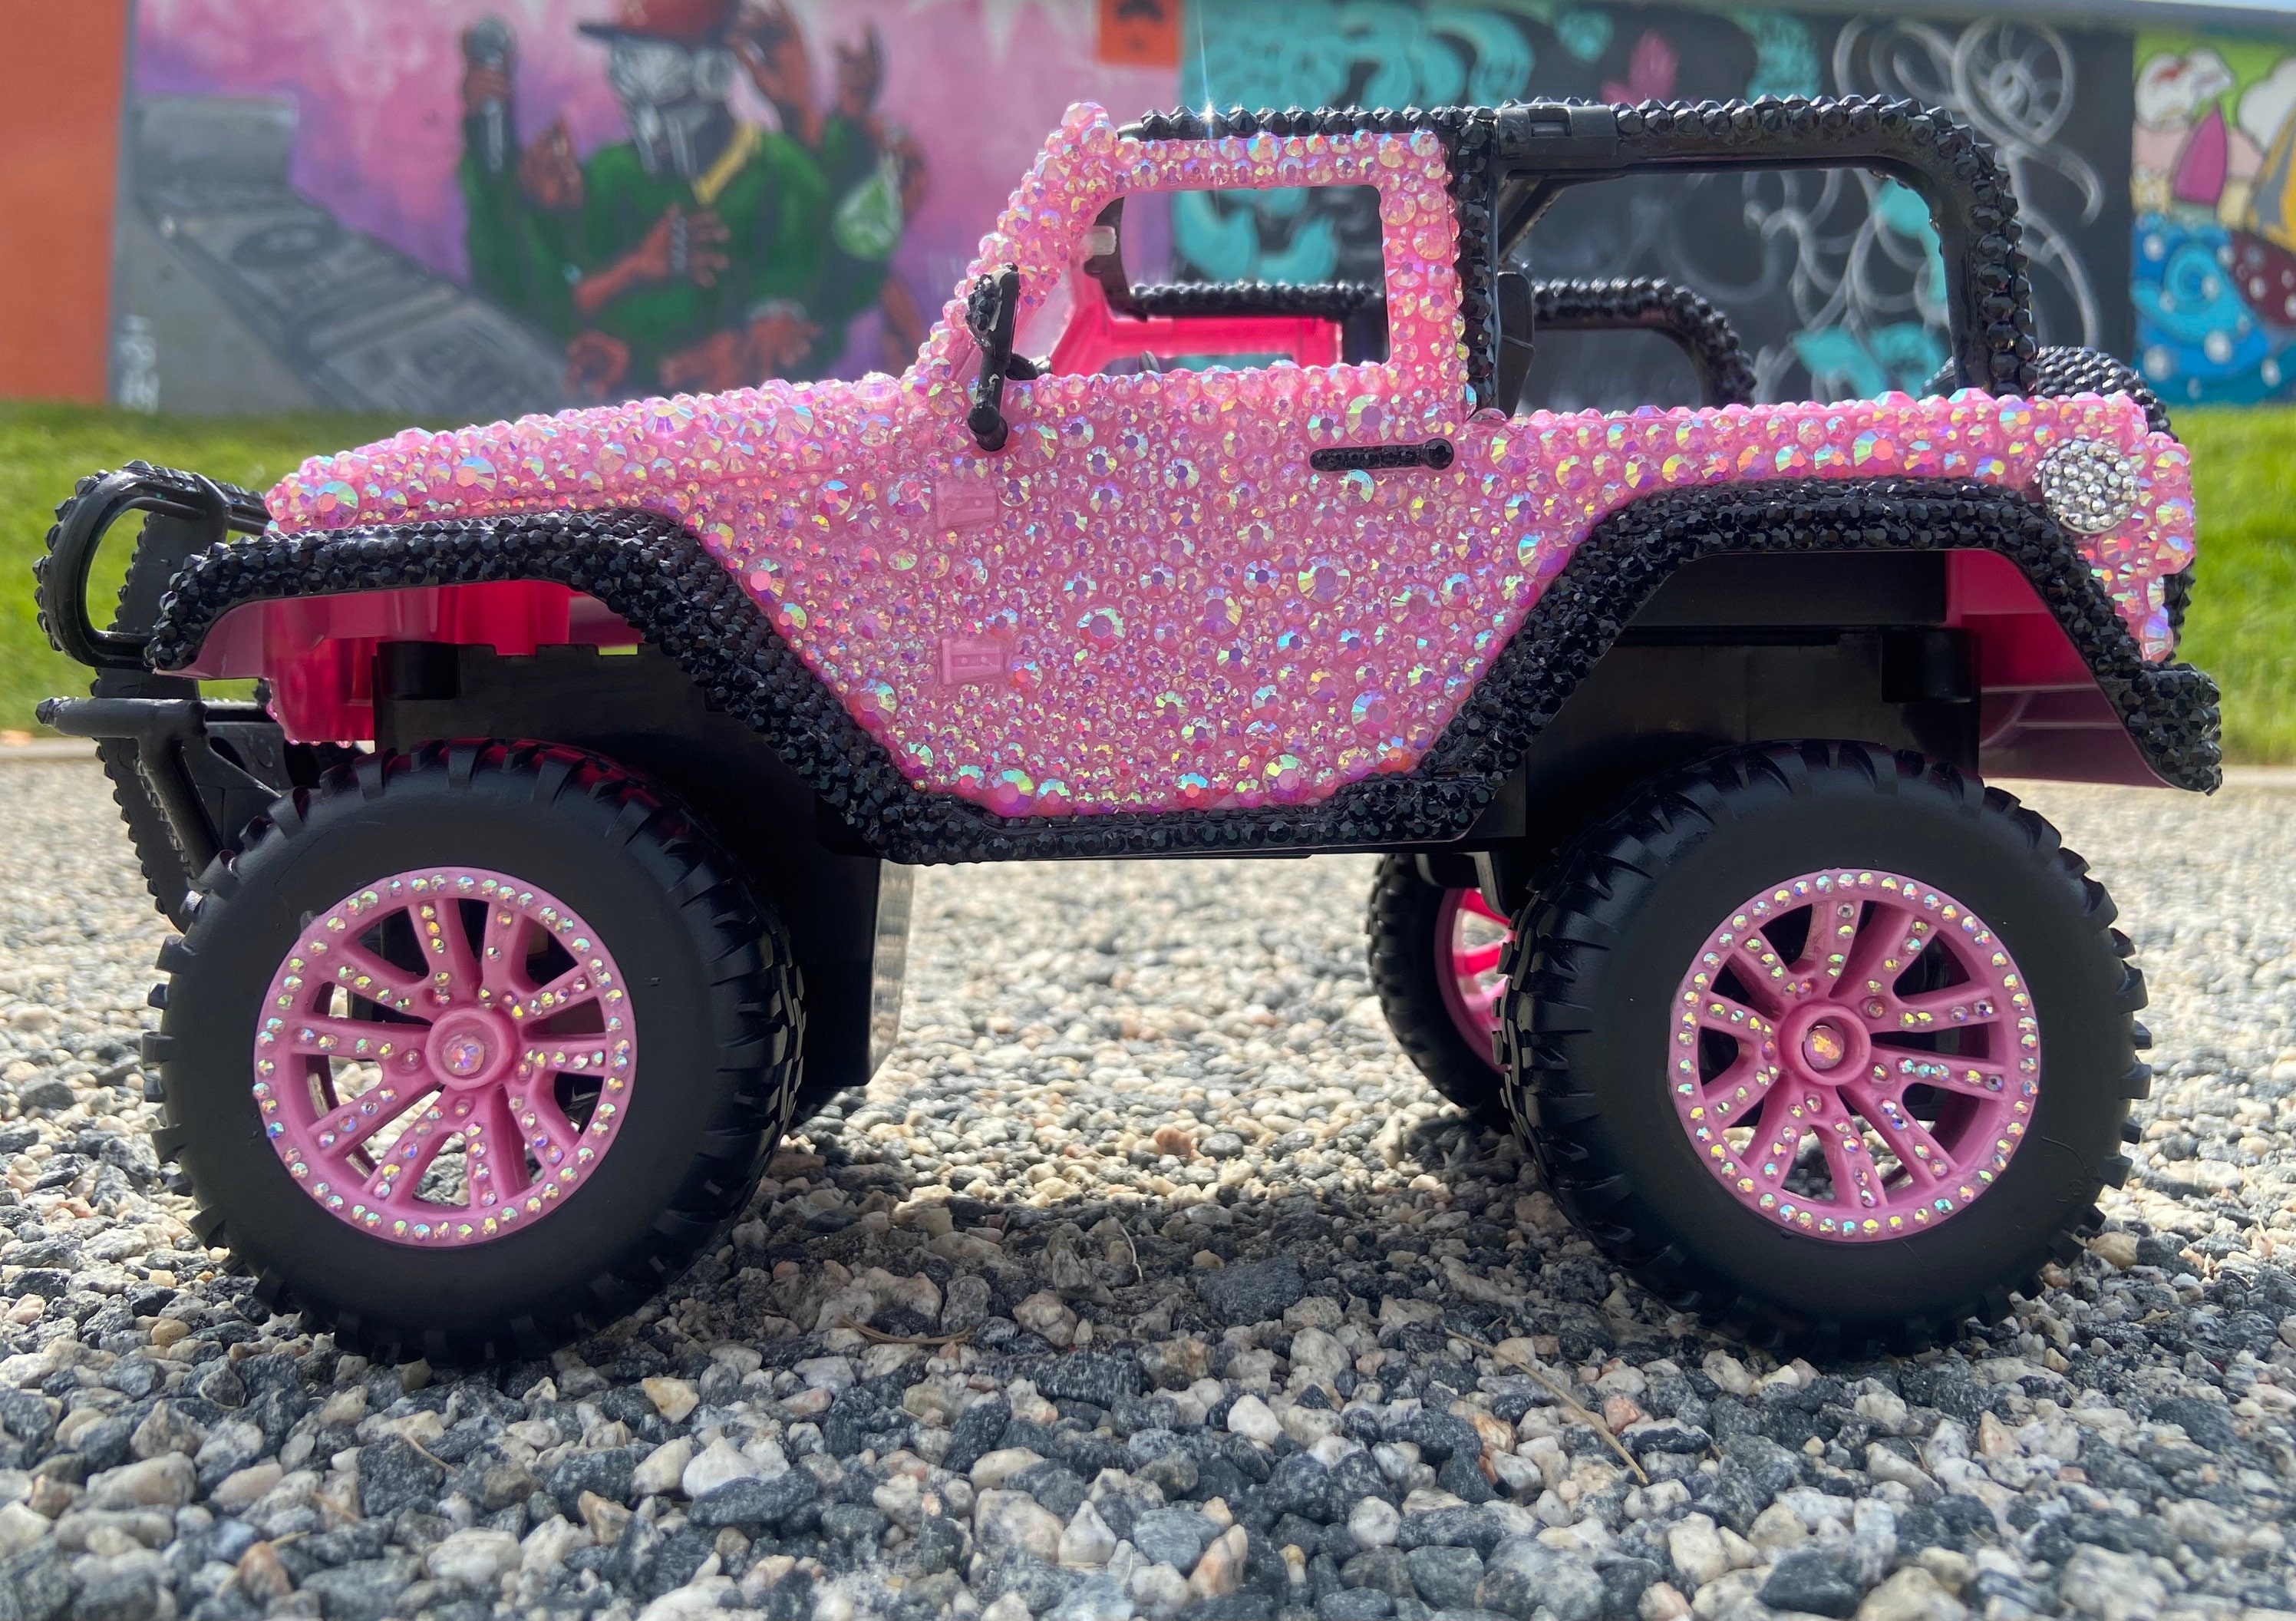 Barbie Jeep, voiture télécommandée, voiture télécommandée rose